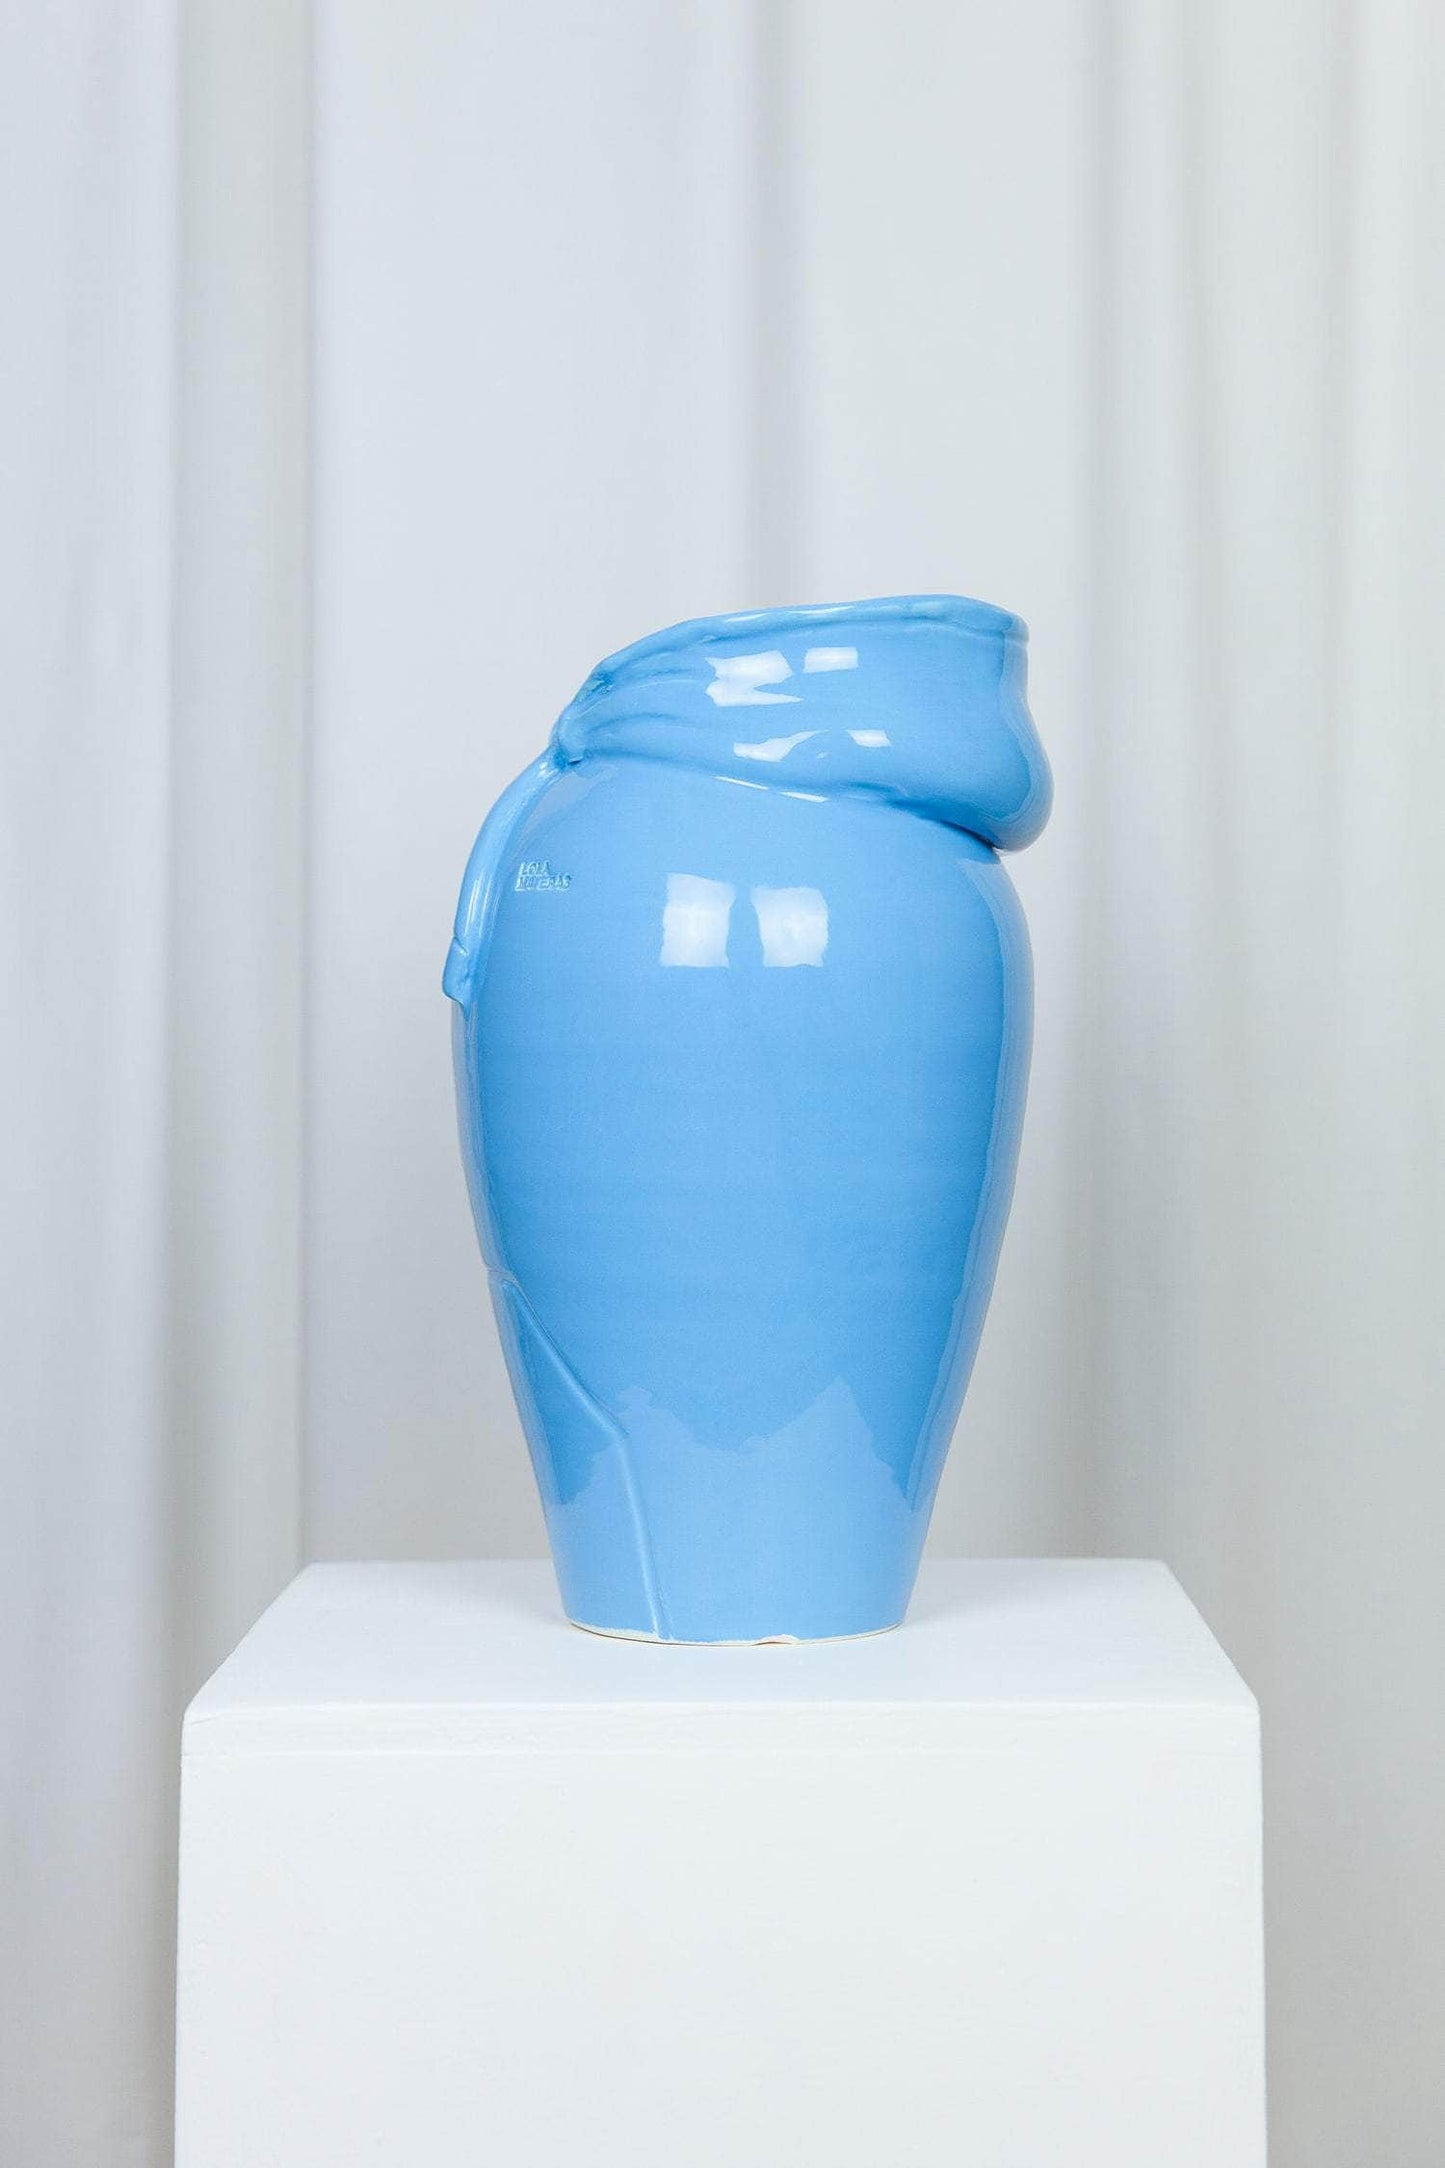 Hoodie Vase Blue